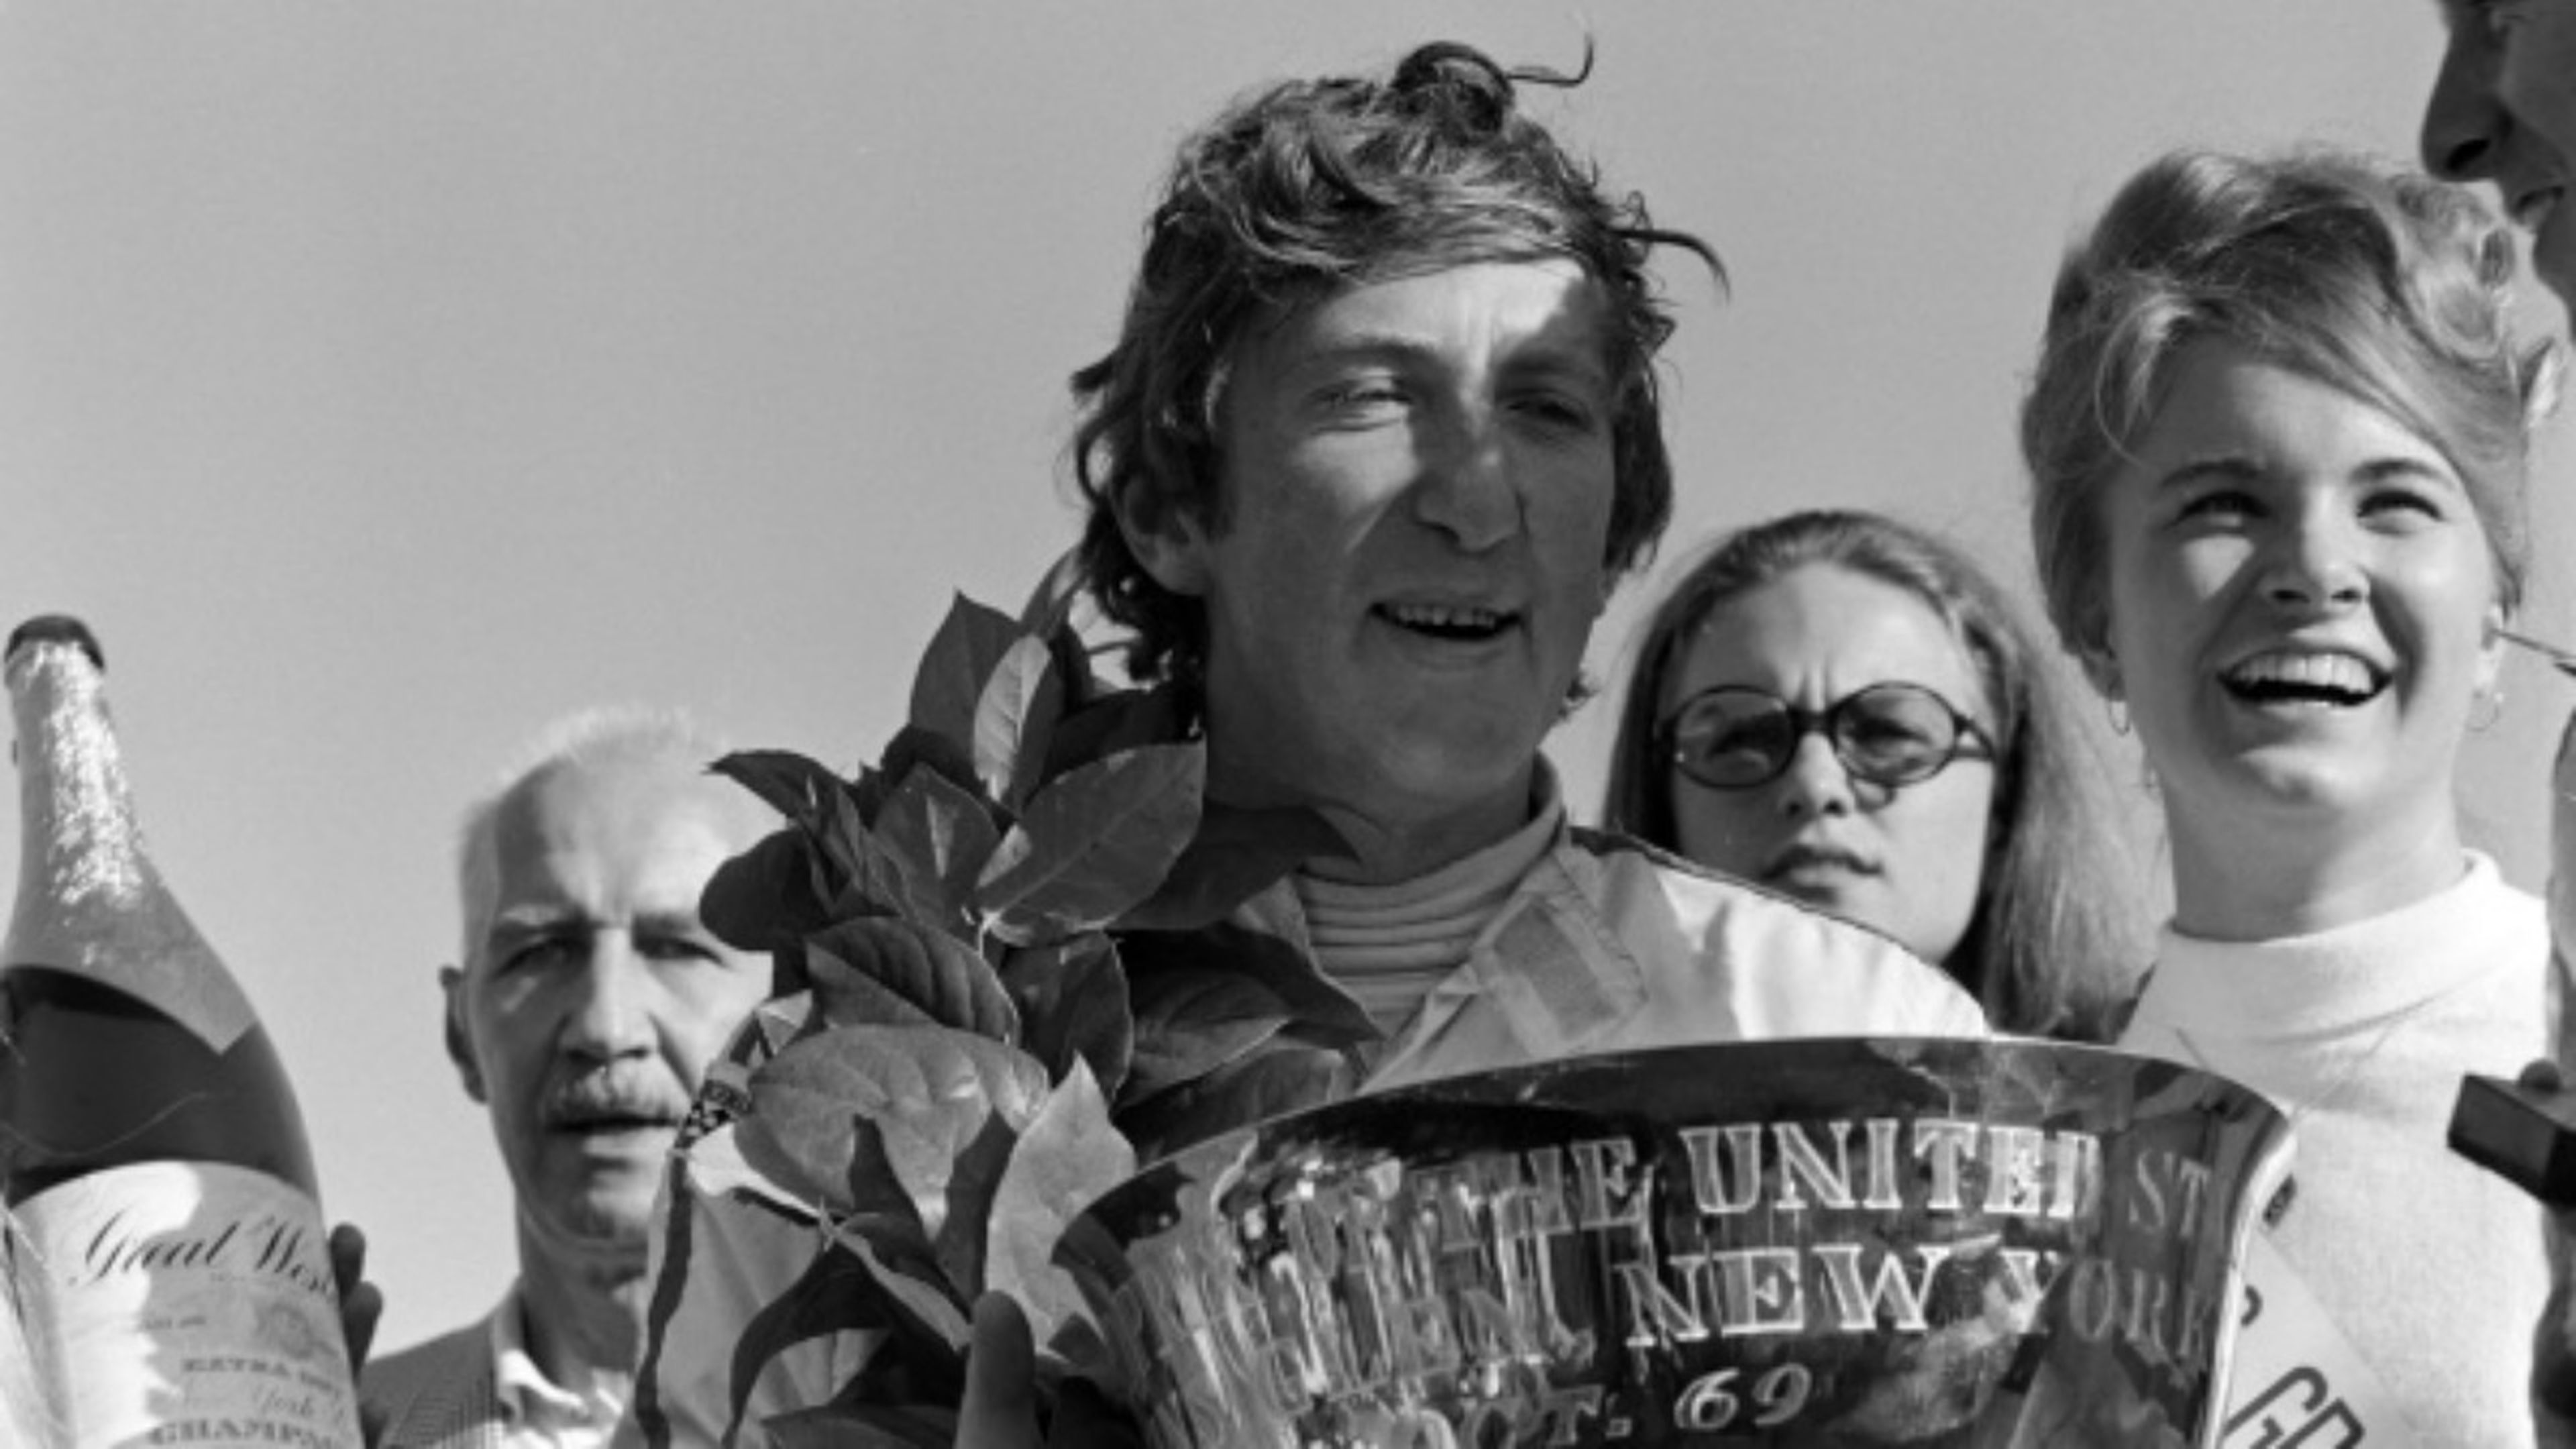 Jochen Rindt era buen amigo de Marko: fue campeón en el año 1970, mismo en el que murió en un accidente en Monza